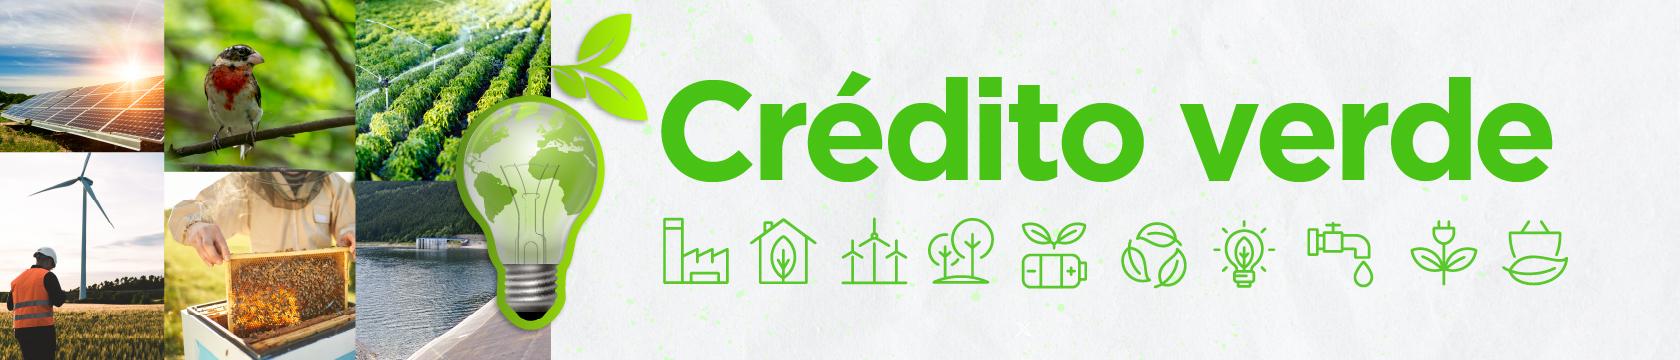 Credito verde